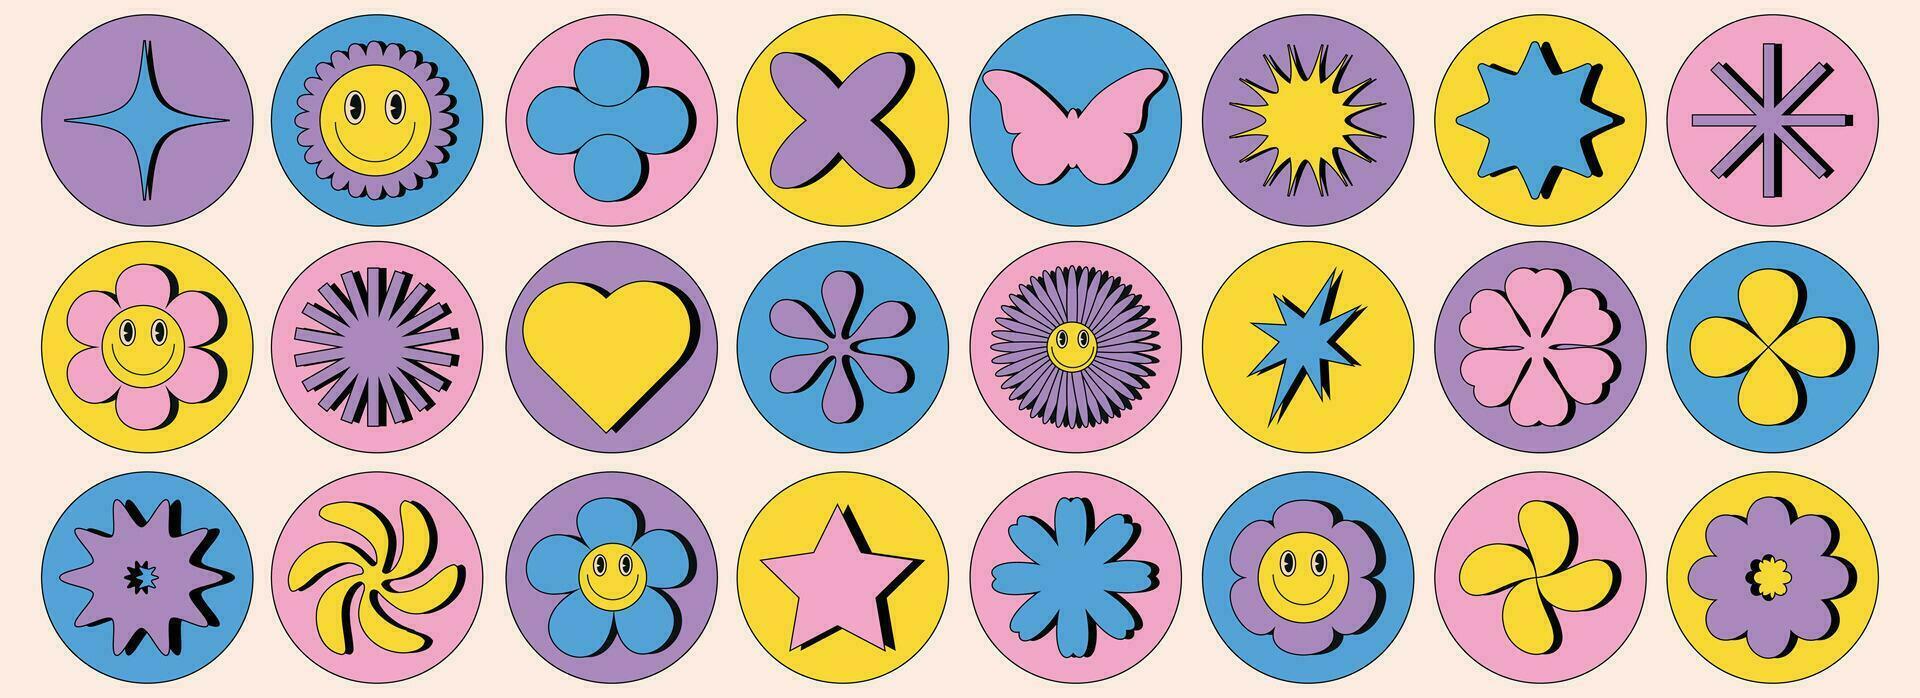 de moda retro resumen formas flor, estrella, corazón, mariposa. diseño elementos para carteles, pegatinas, web diseño en 2000 estilo. vector ilustración.